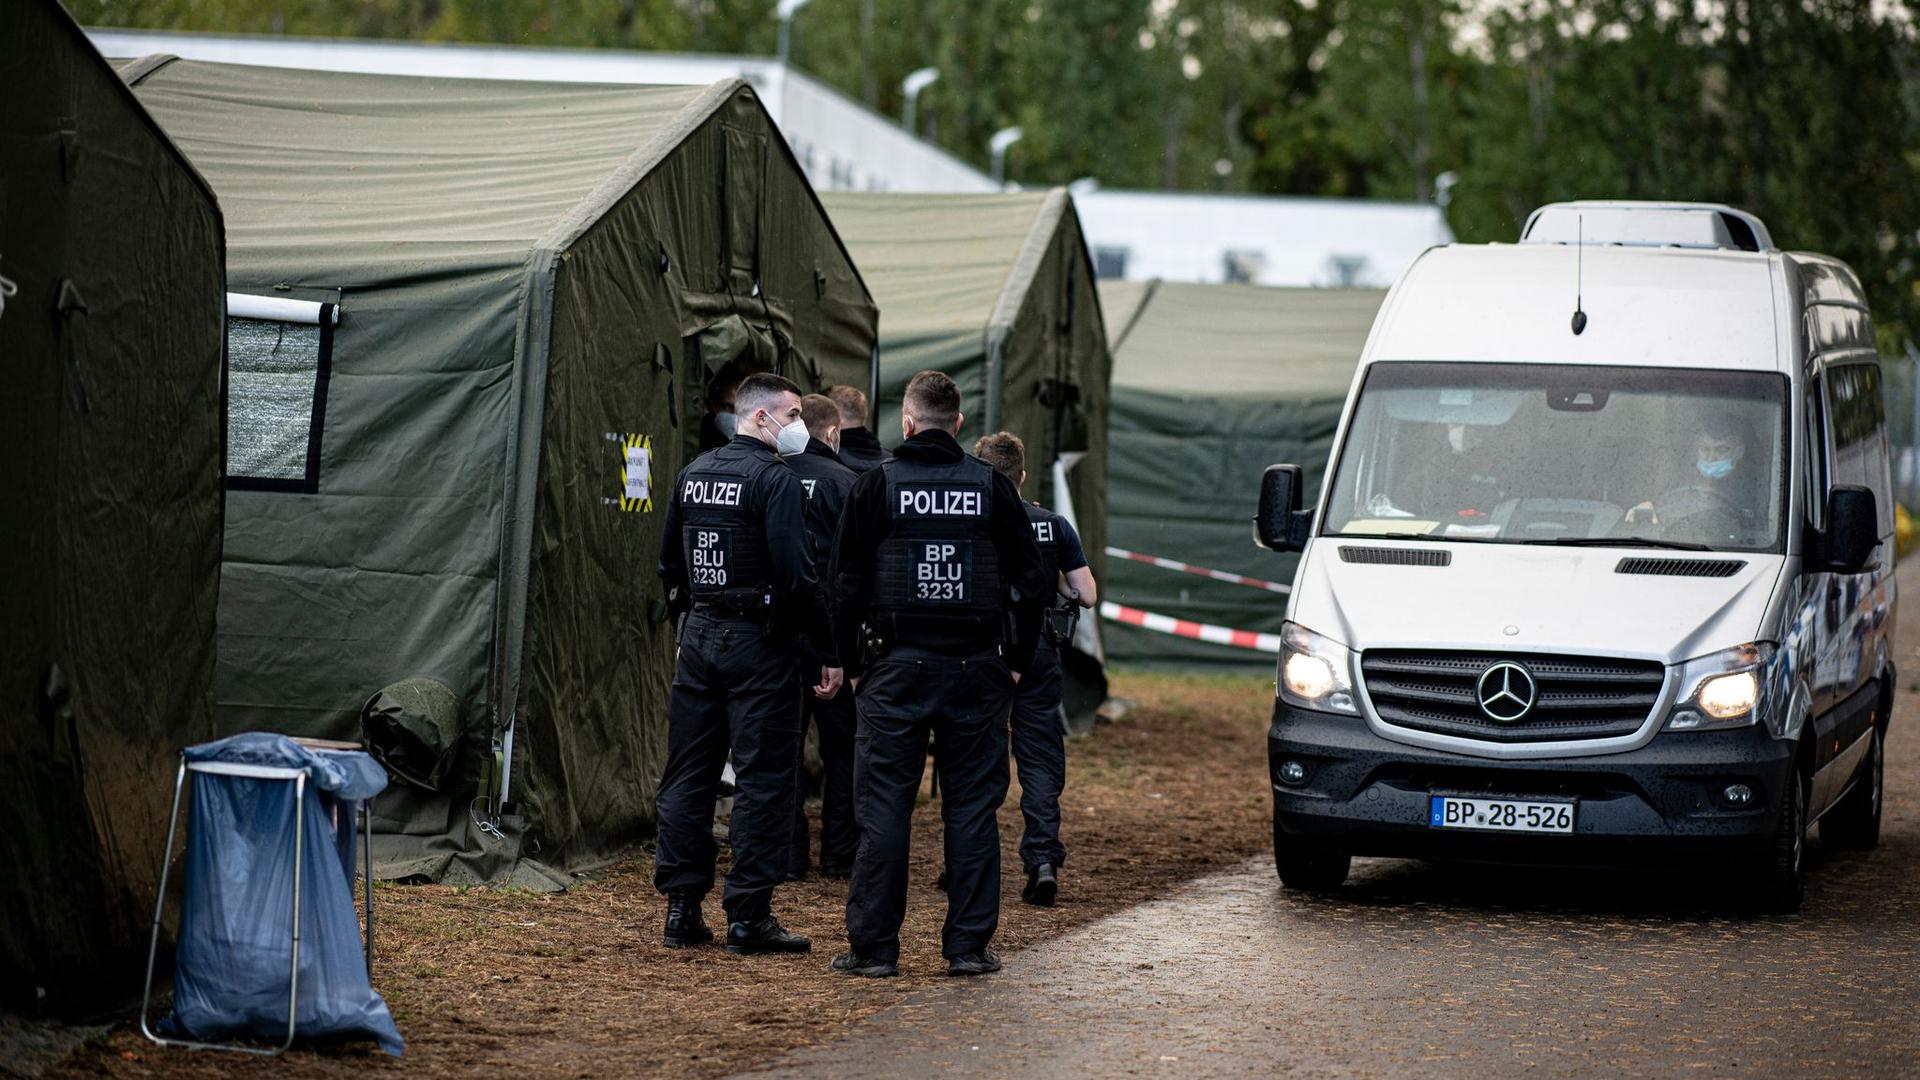 Polizisten in der Erstaufnahmeeinrichtung Eisenhüttenstadt neben einem Zelt für neu ankommende Asylsuchende.